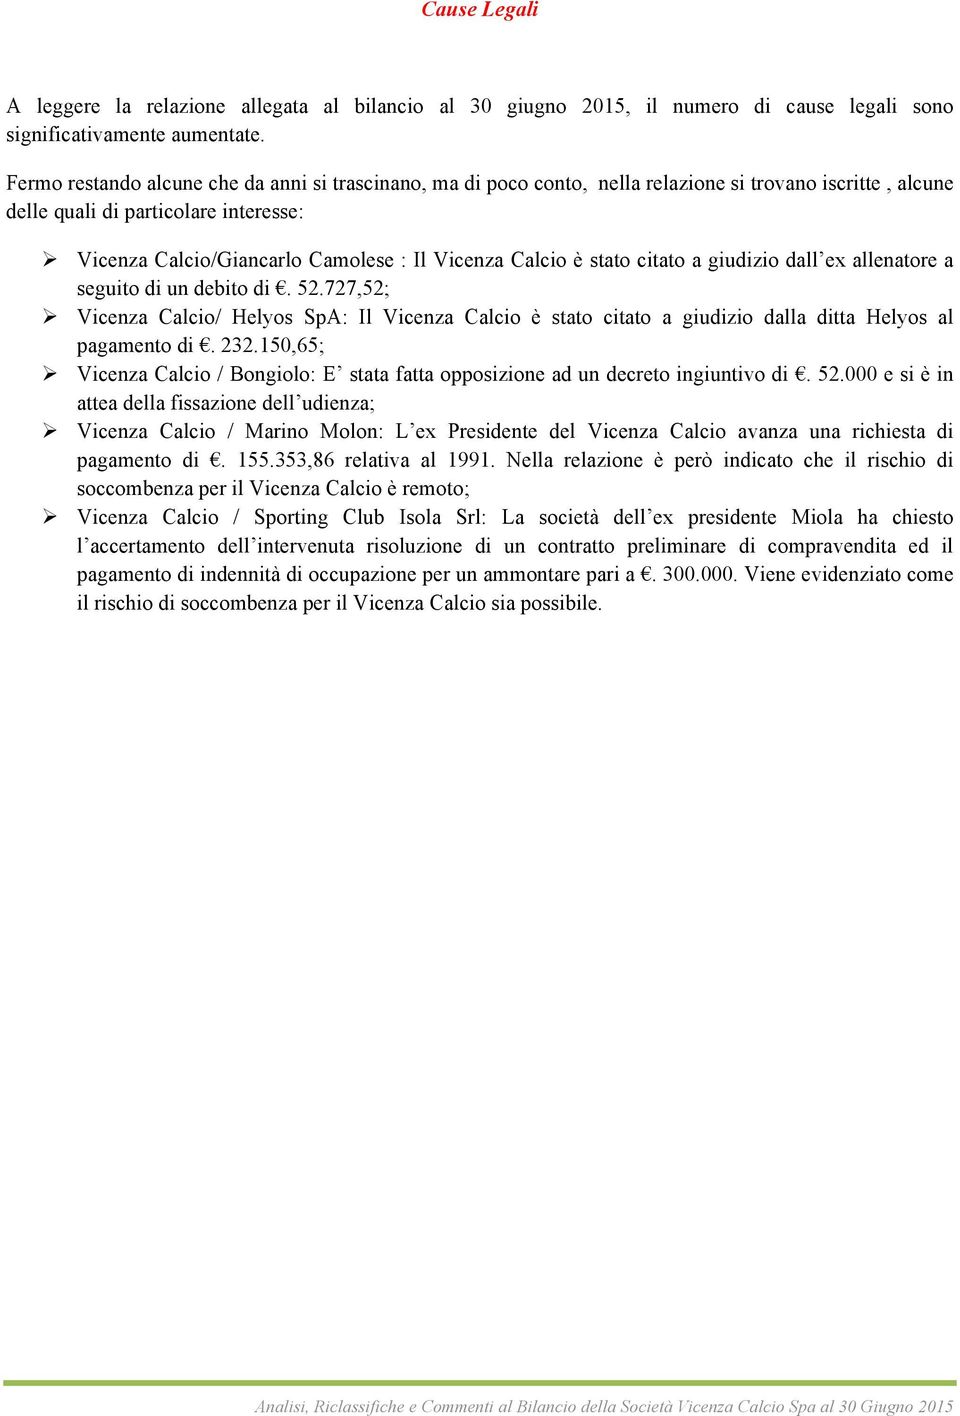 Calcio è stato citato a giudizio dall ex allenatore a seguito di un debito di. 52.727,52; Ø Vicenza Calcio/ Helyos SpA: Il Vicenza Calcio è stato citato a giudizio dalla ditta Helyos al pagamento di.